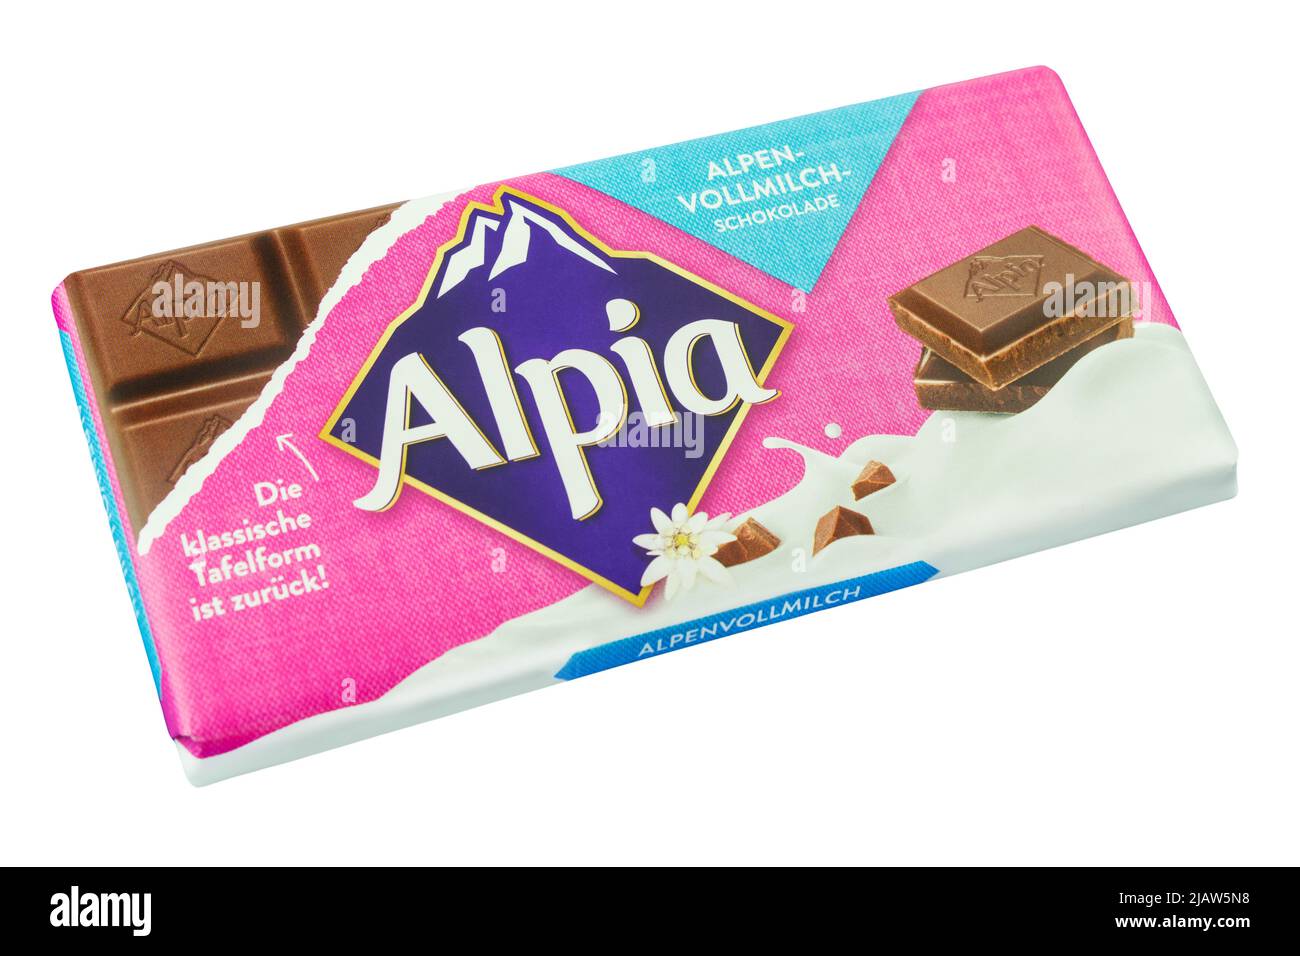 1 Tafel Alpia Schokolade Vollmilch auf weissem Hintergrund Stock Photo -  Alamy